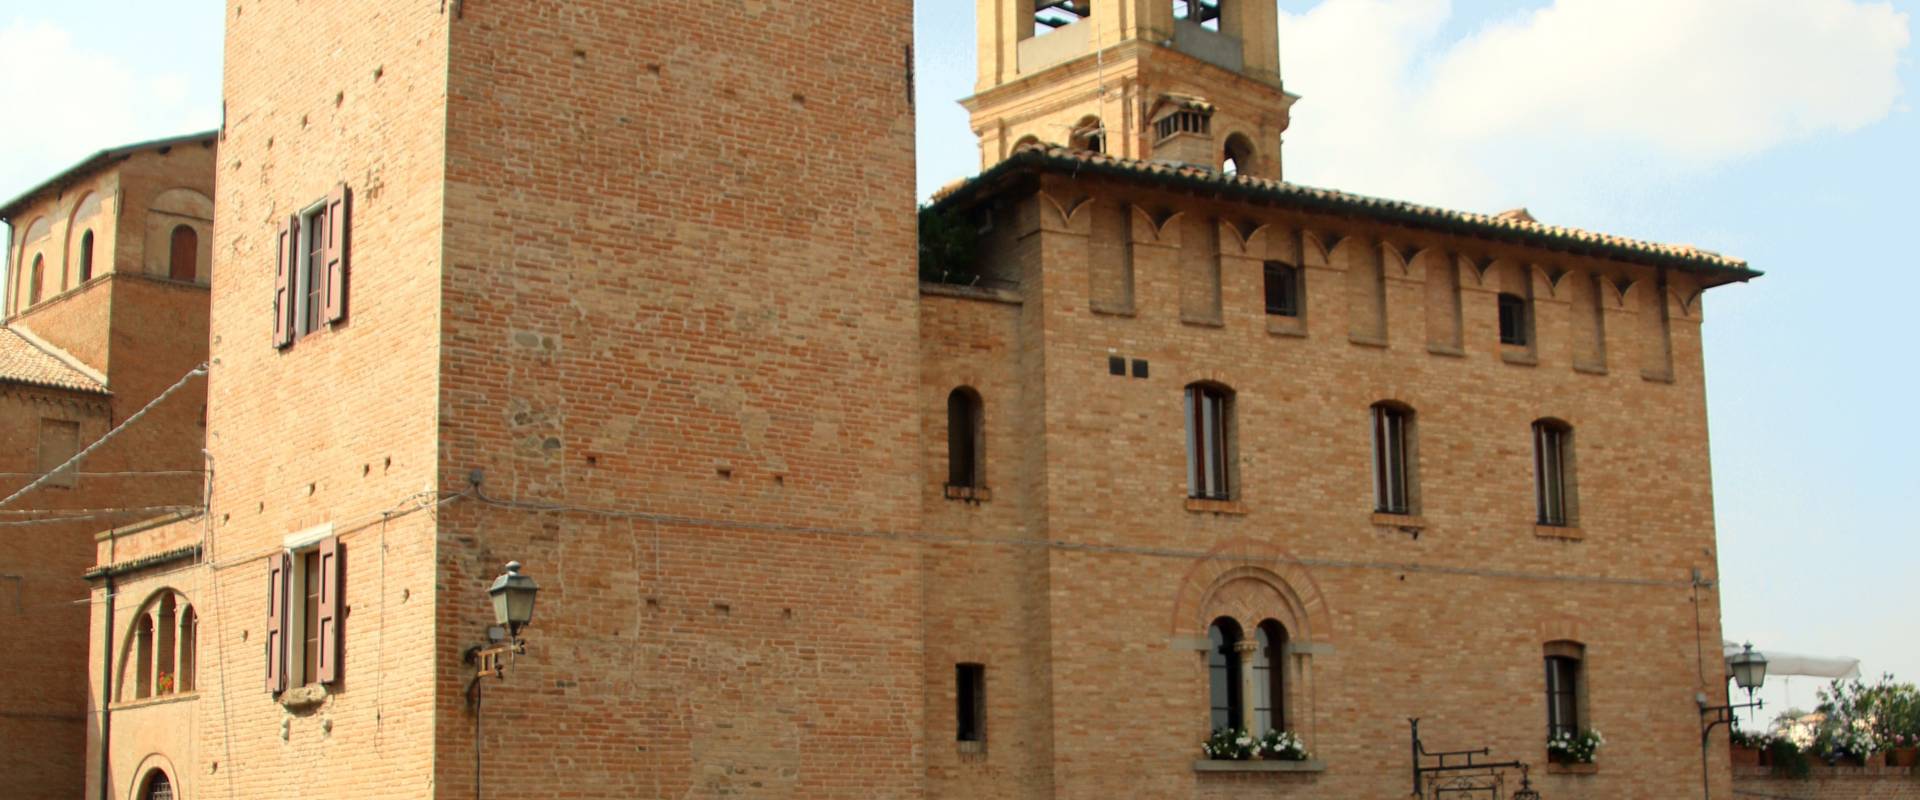 Torre delle Prigioni (Castelvetro di Modena) 06 photo by Mongolo1984